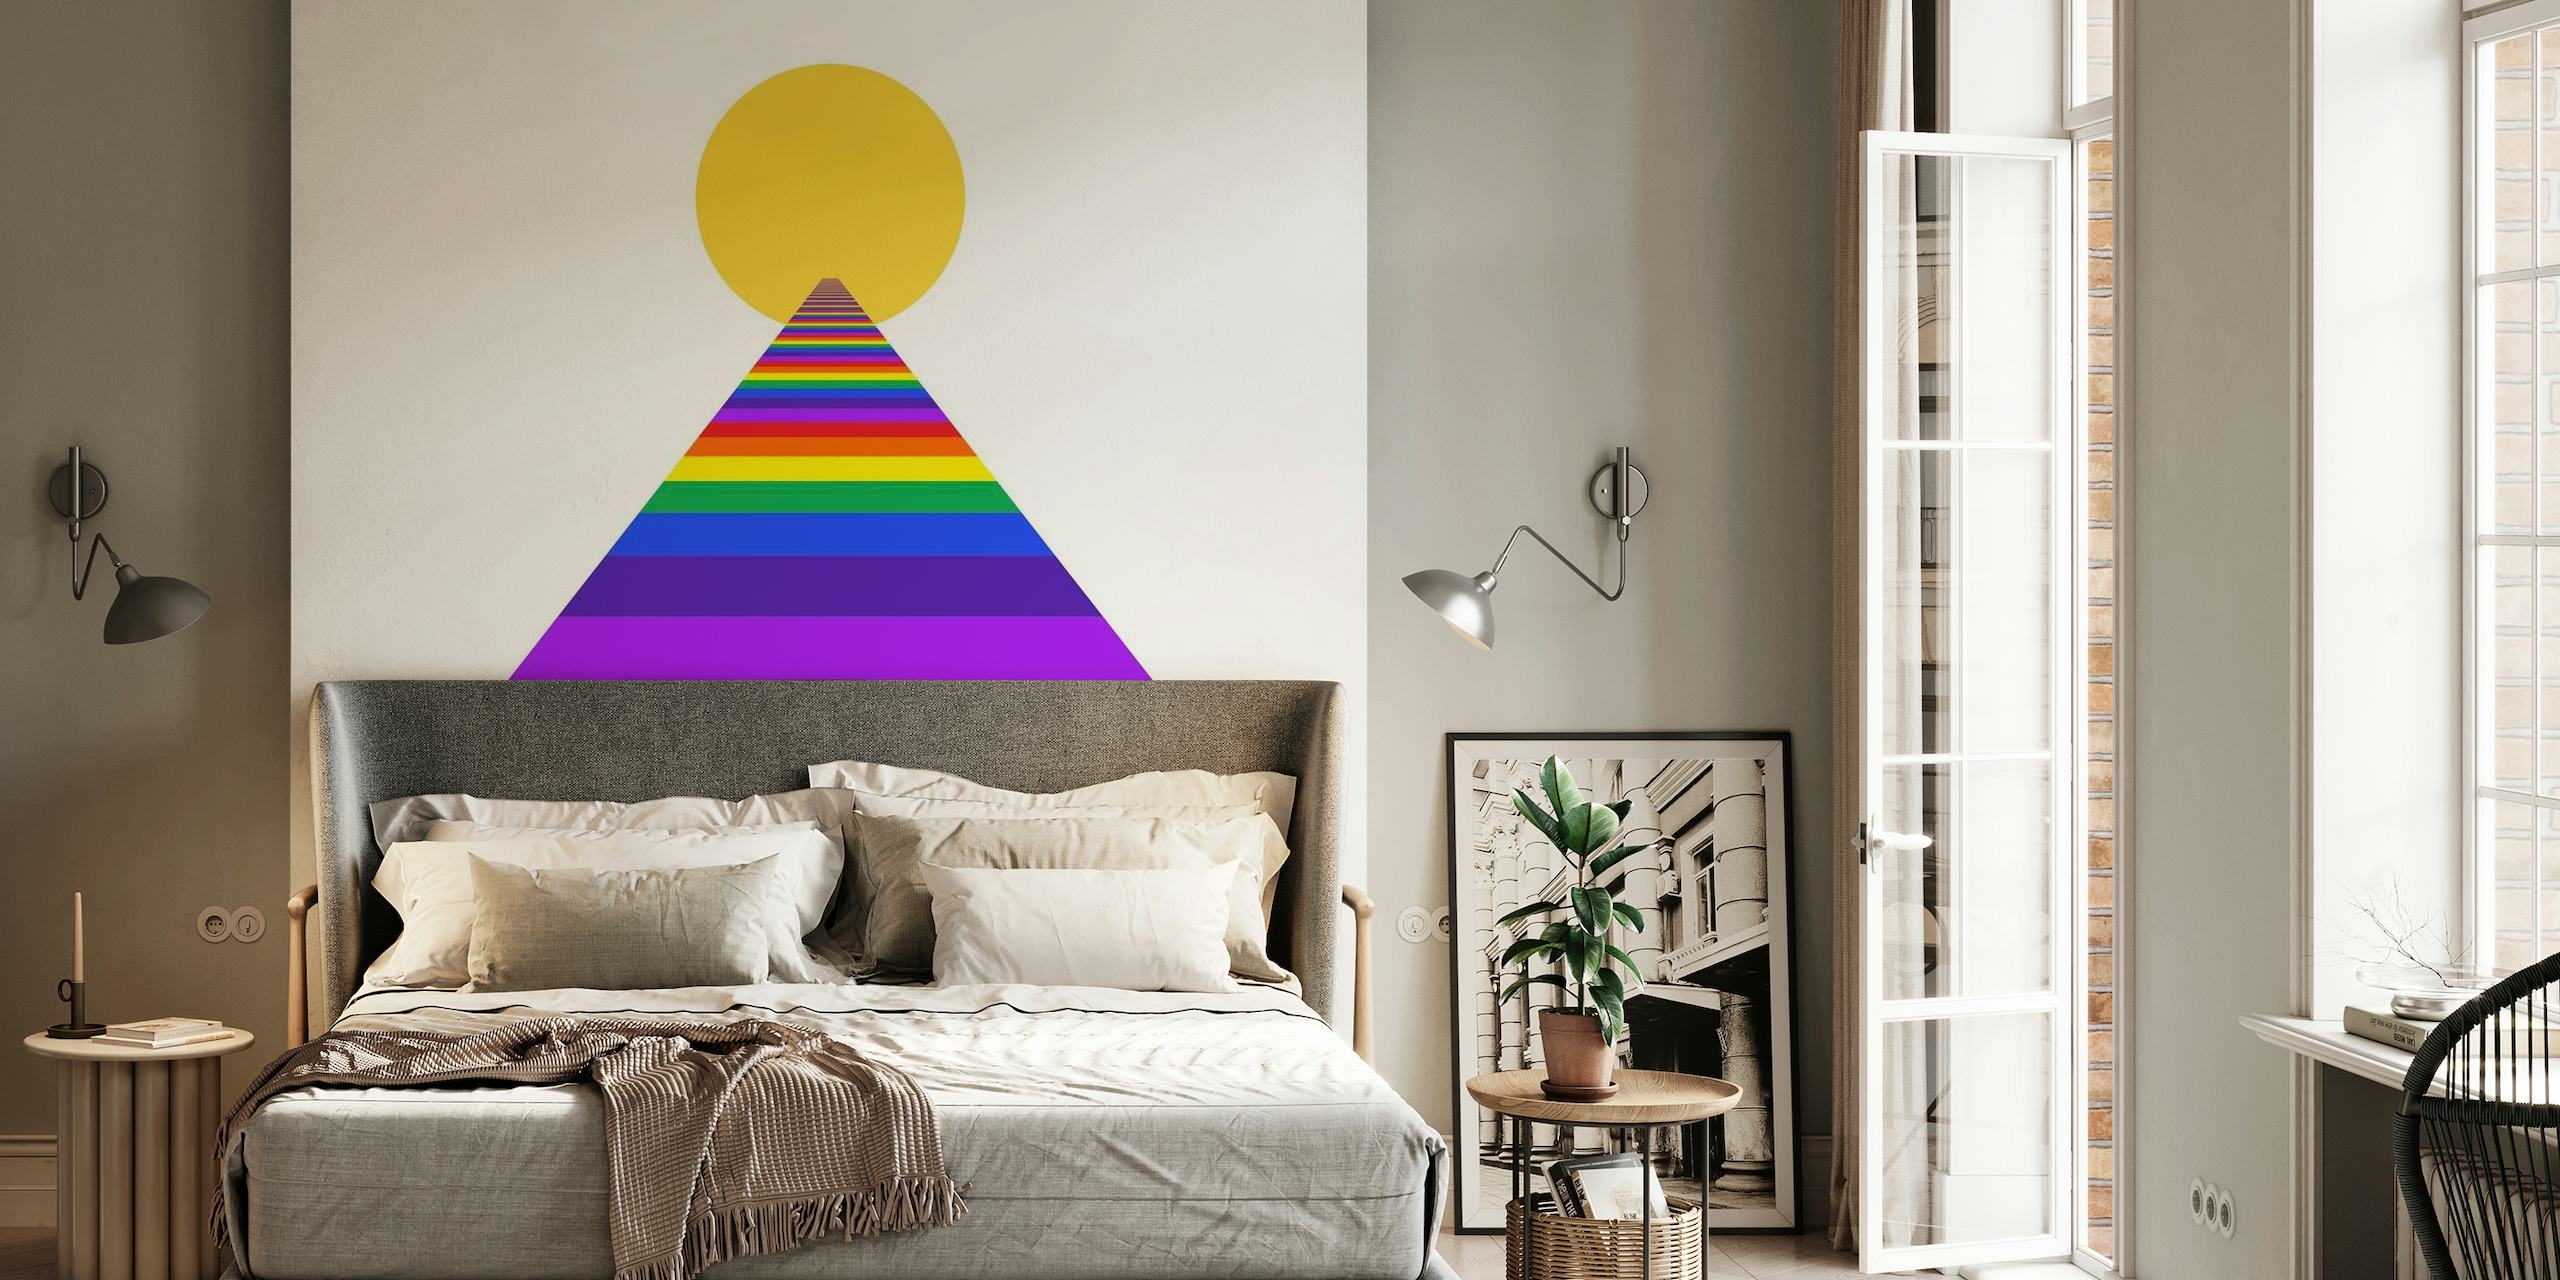 Murale colorée « Raise Your Vibration » avec une pyramide arc-en-ciel et un soleil